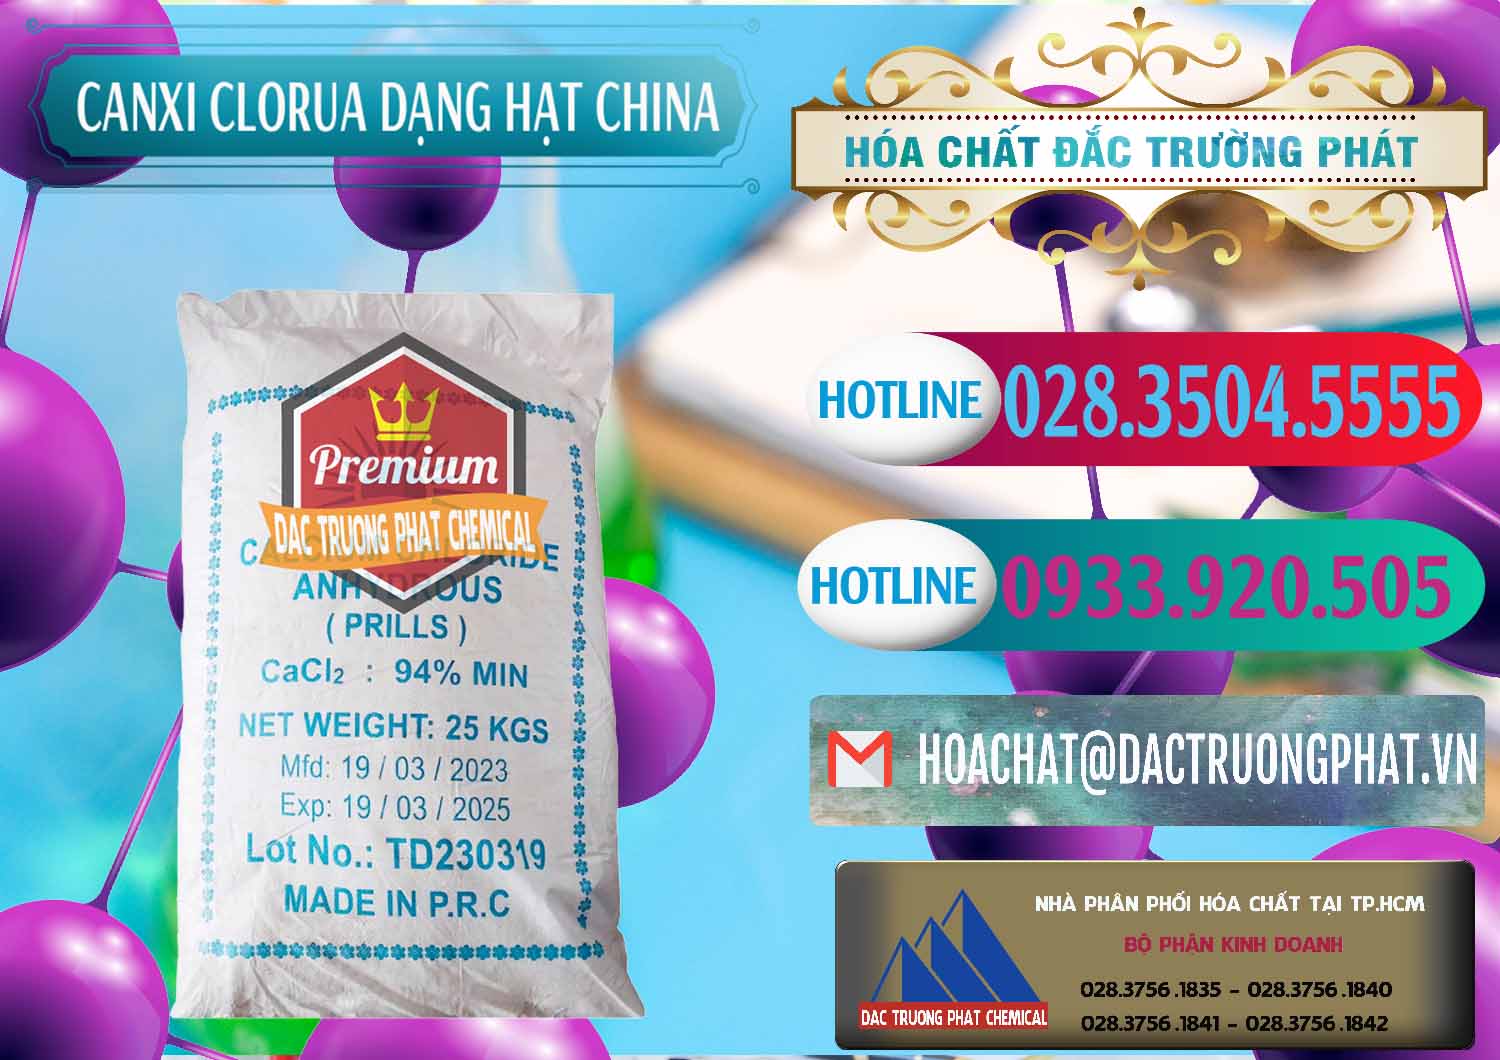 Chuyên cung ứng - bán CaCl2 – Canxi Clorua 94% Dạng Hạt Trung Quốc China - 0373 - Nơi chuyên nhập khẩu và cung cấp hóa chất tại TP.HCM - truongphat.vn